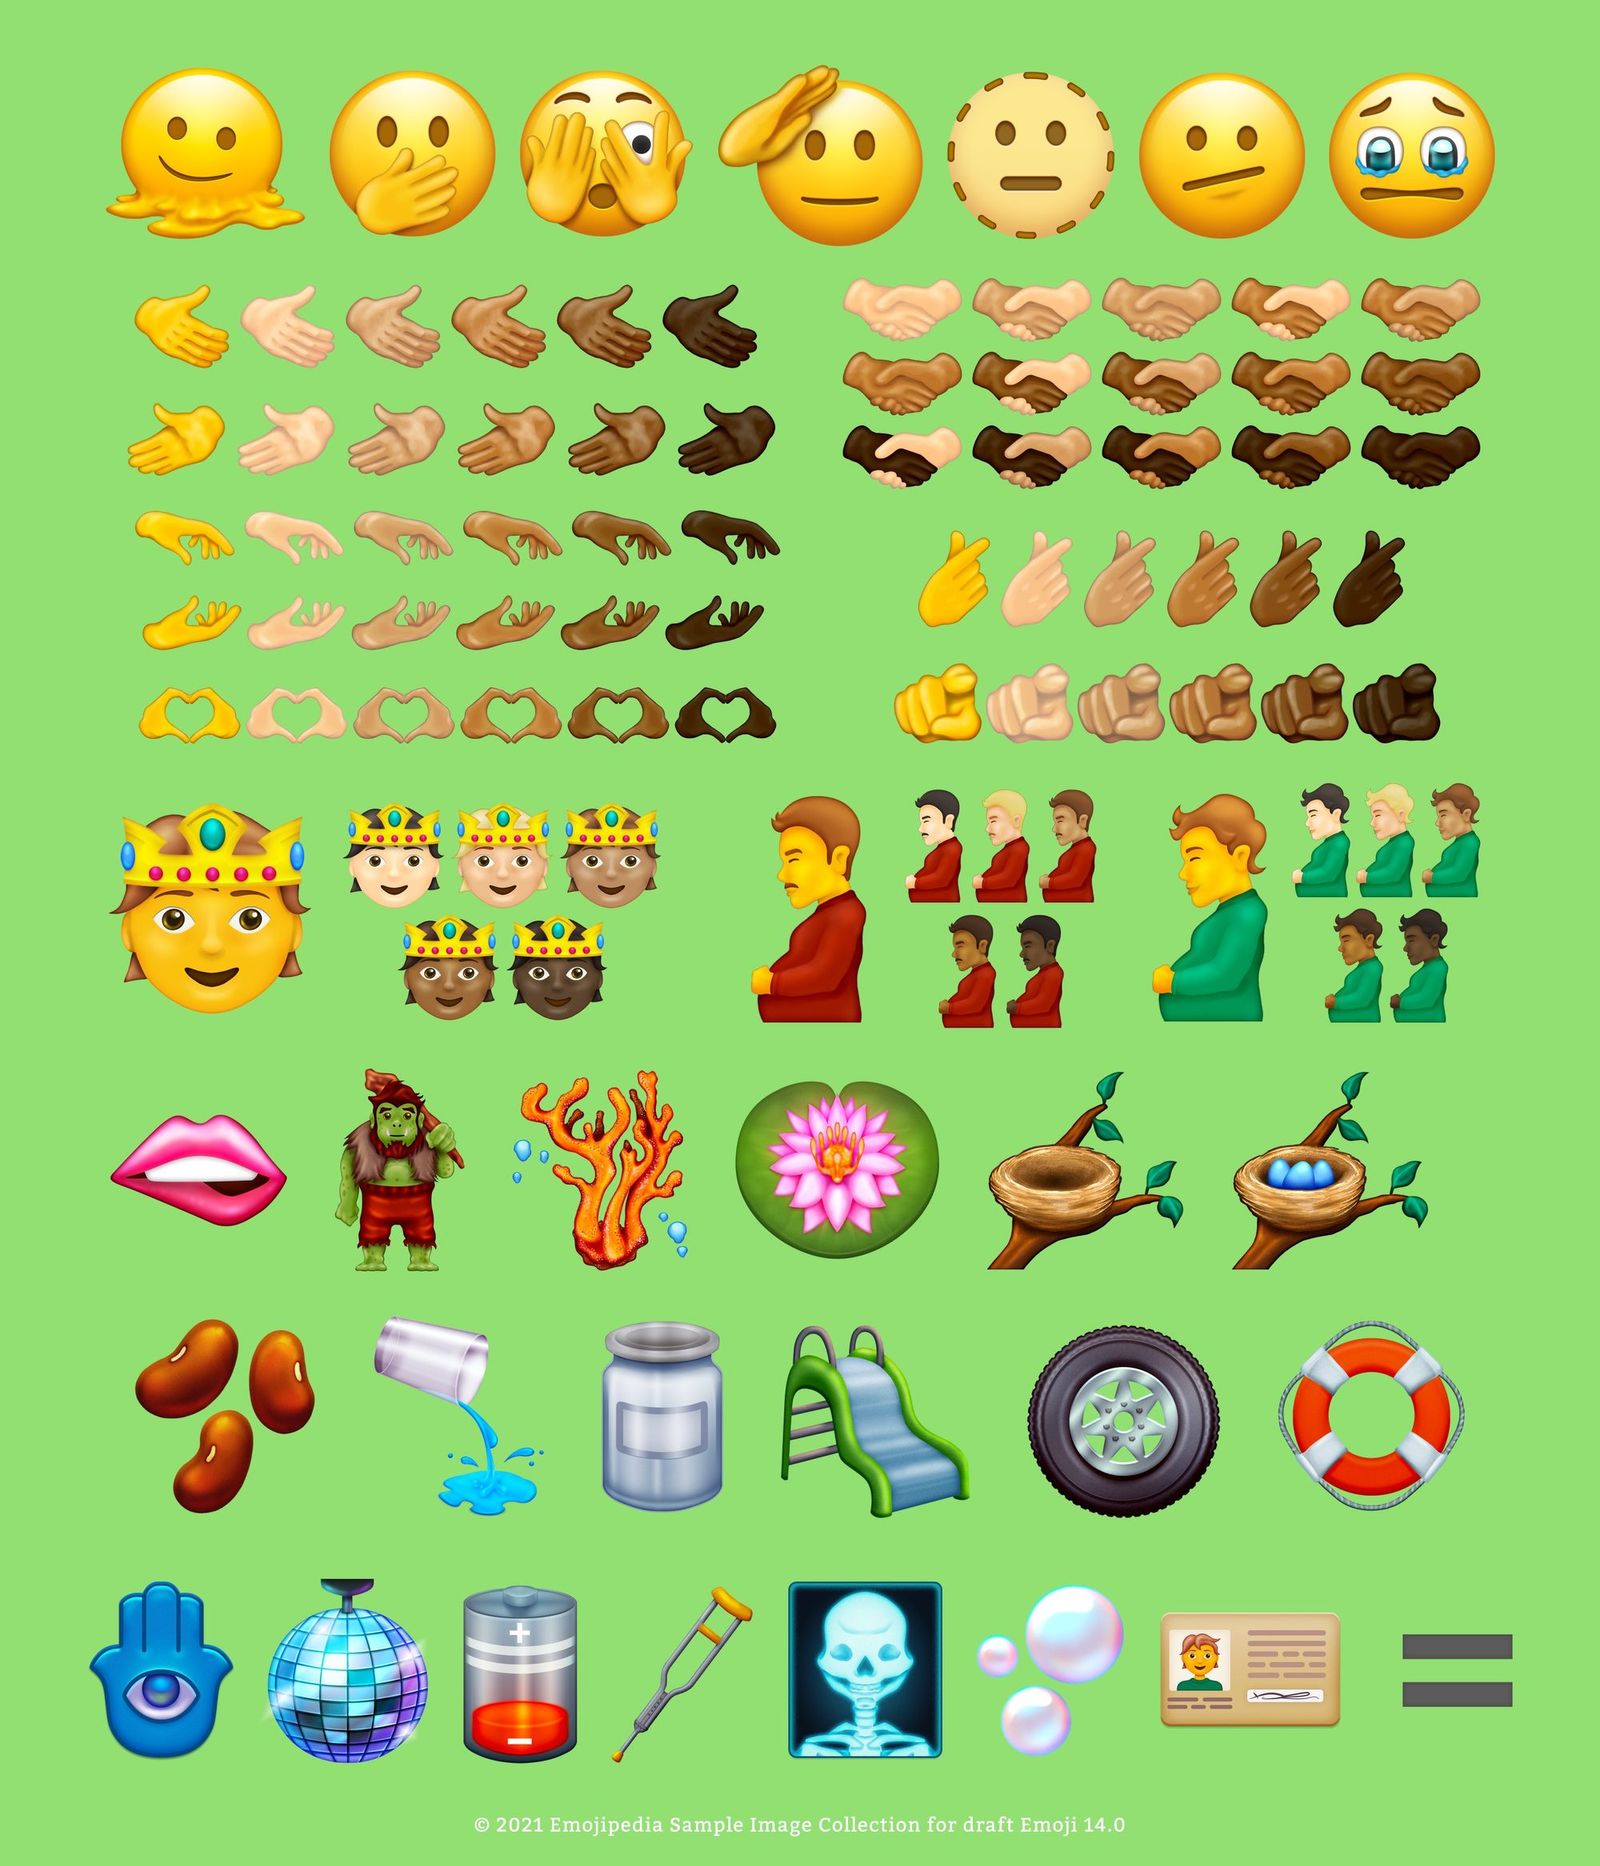 Bu yıl iPhone'a gelebilecek yeni emojilerden bazıları ortaya çıktı